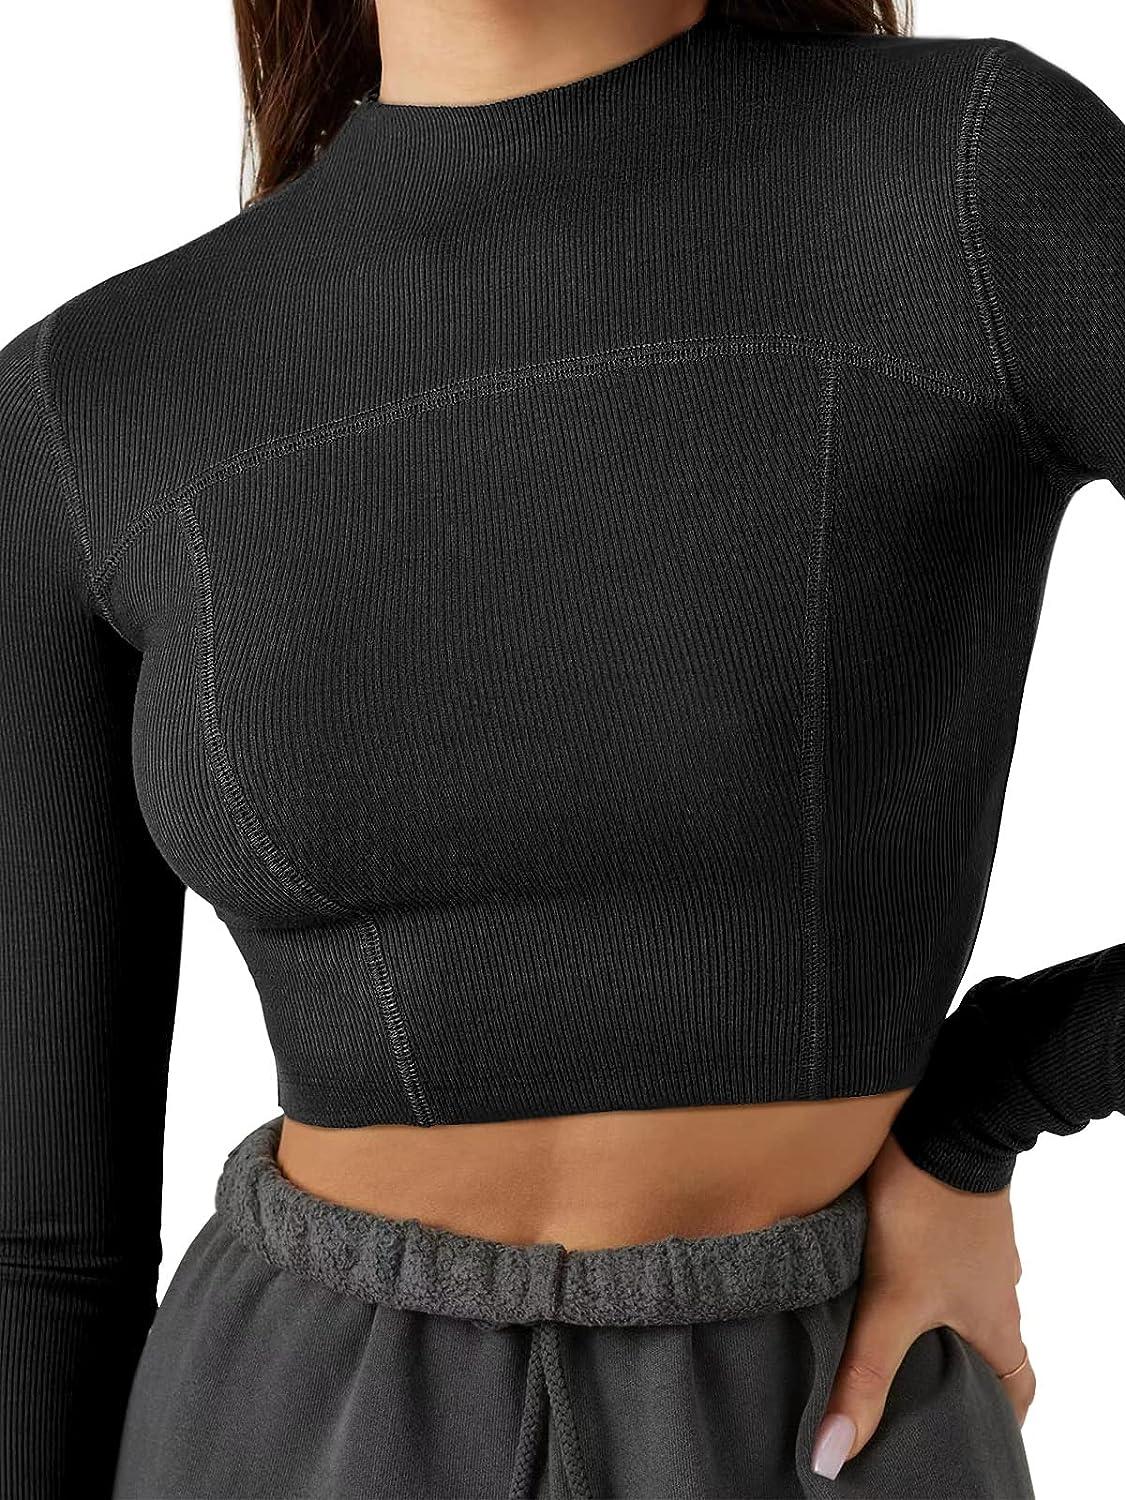 LASLULU Womens Athletic Hoodies Zipper Long Sleeve Crop Tops